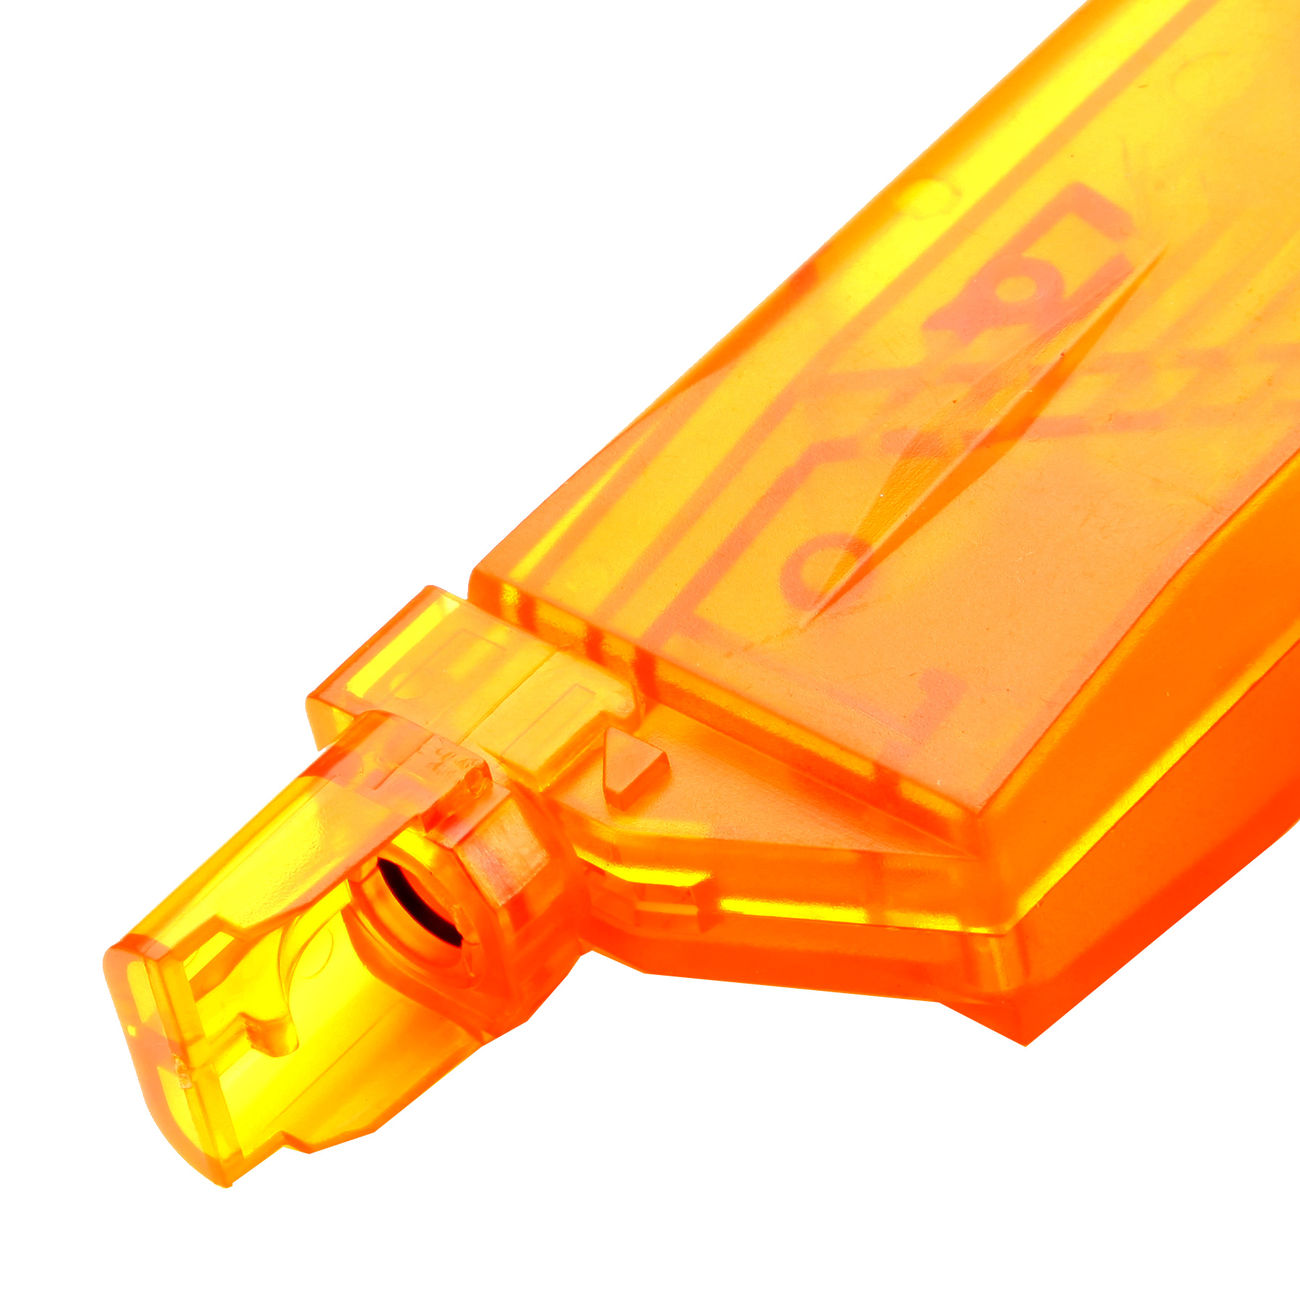 BAAL Pistol-Type Speedloader für 150 BBs orange-transparent Bild 2